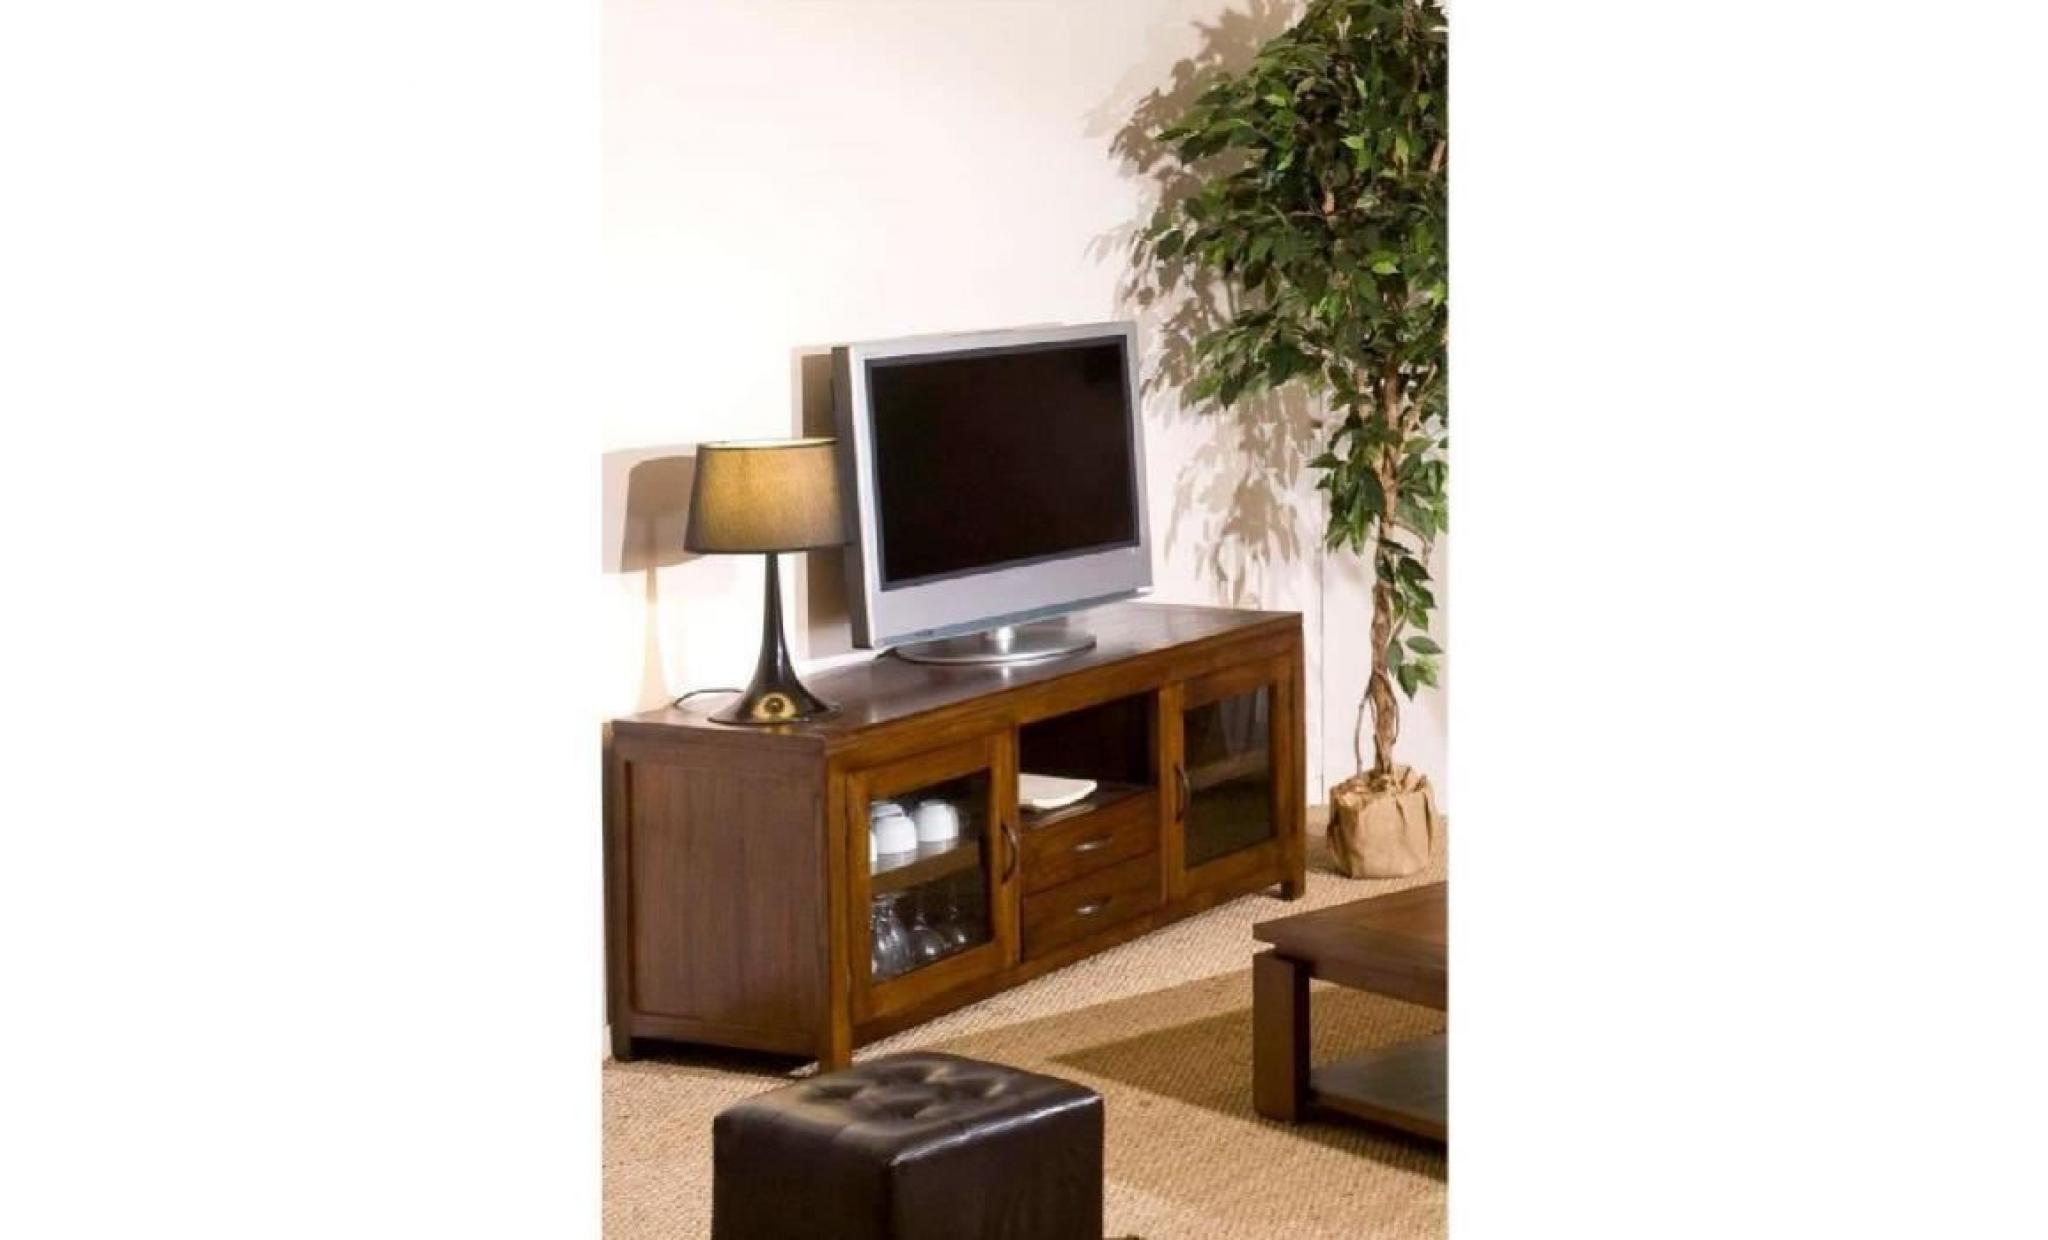 lola meuble tv   ethnique   bois   150cm pas cher